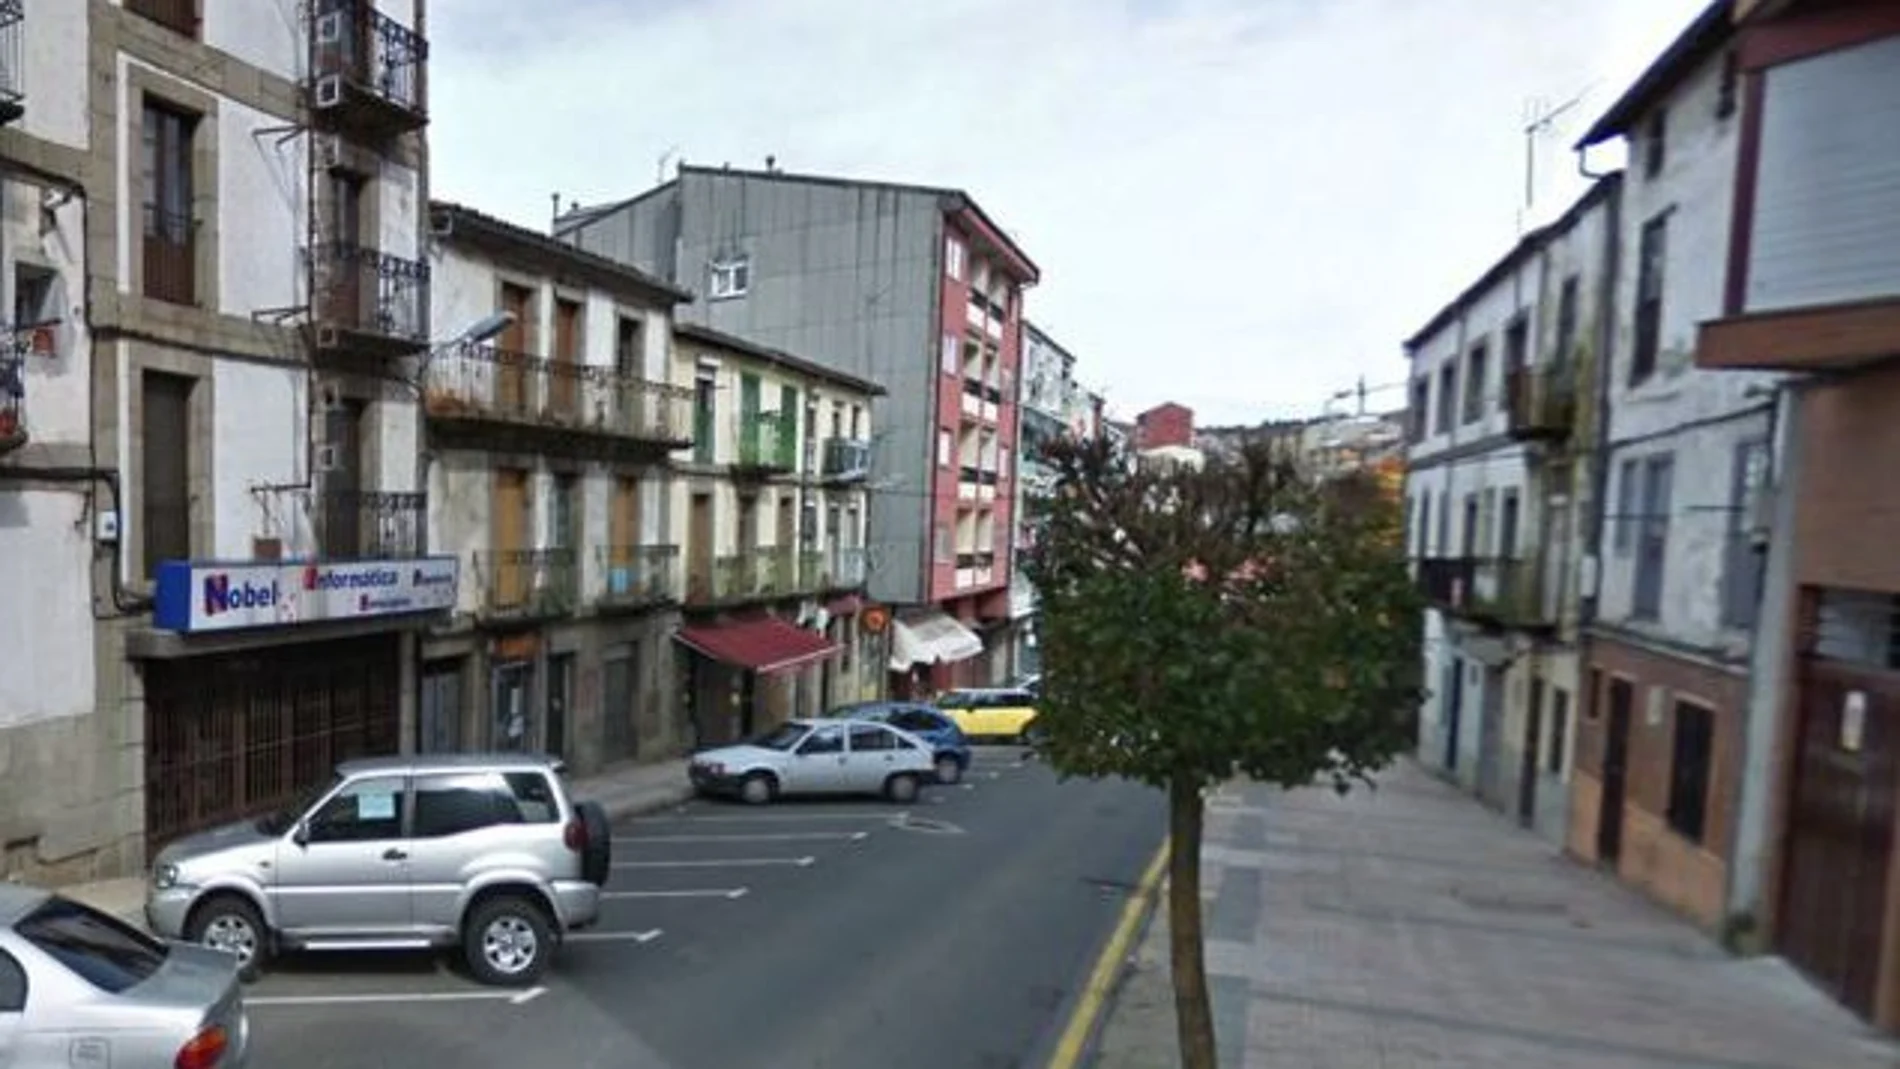 Calle Libertad de la localidad salmantina de Béjar donde se produjo el tiroteo el 9 de julio de 2020